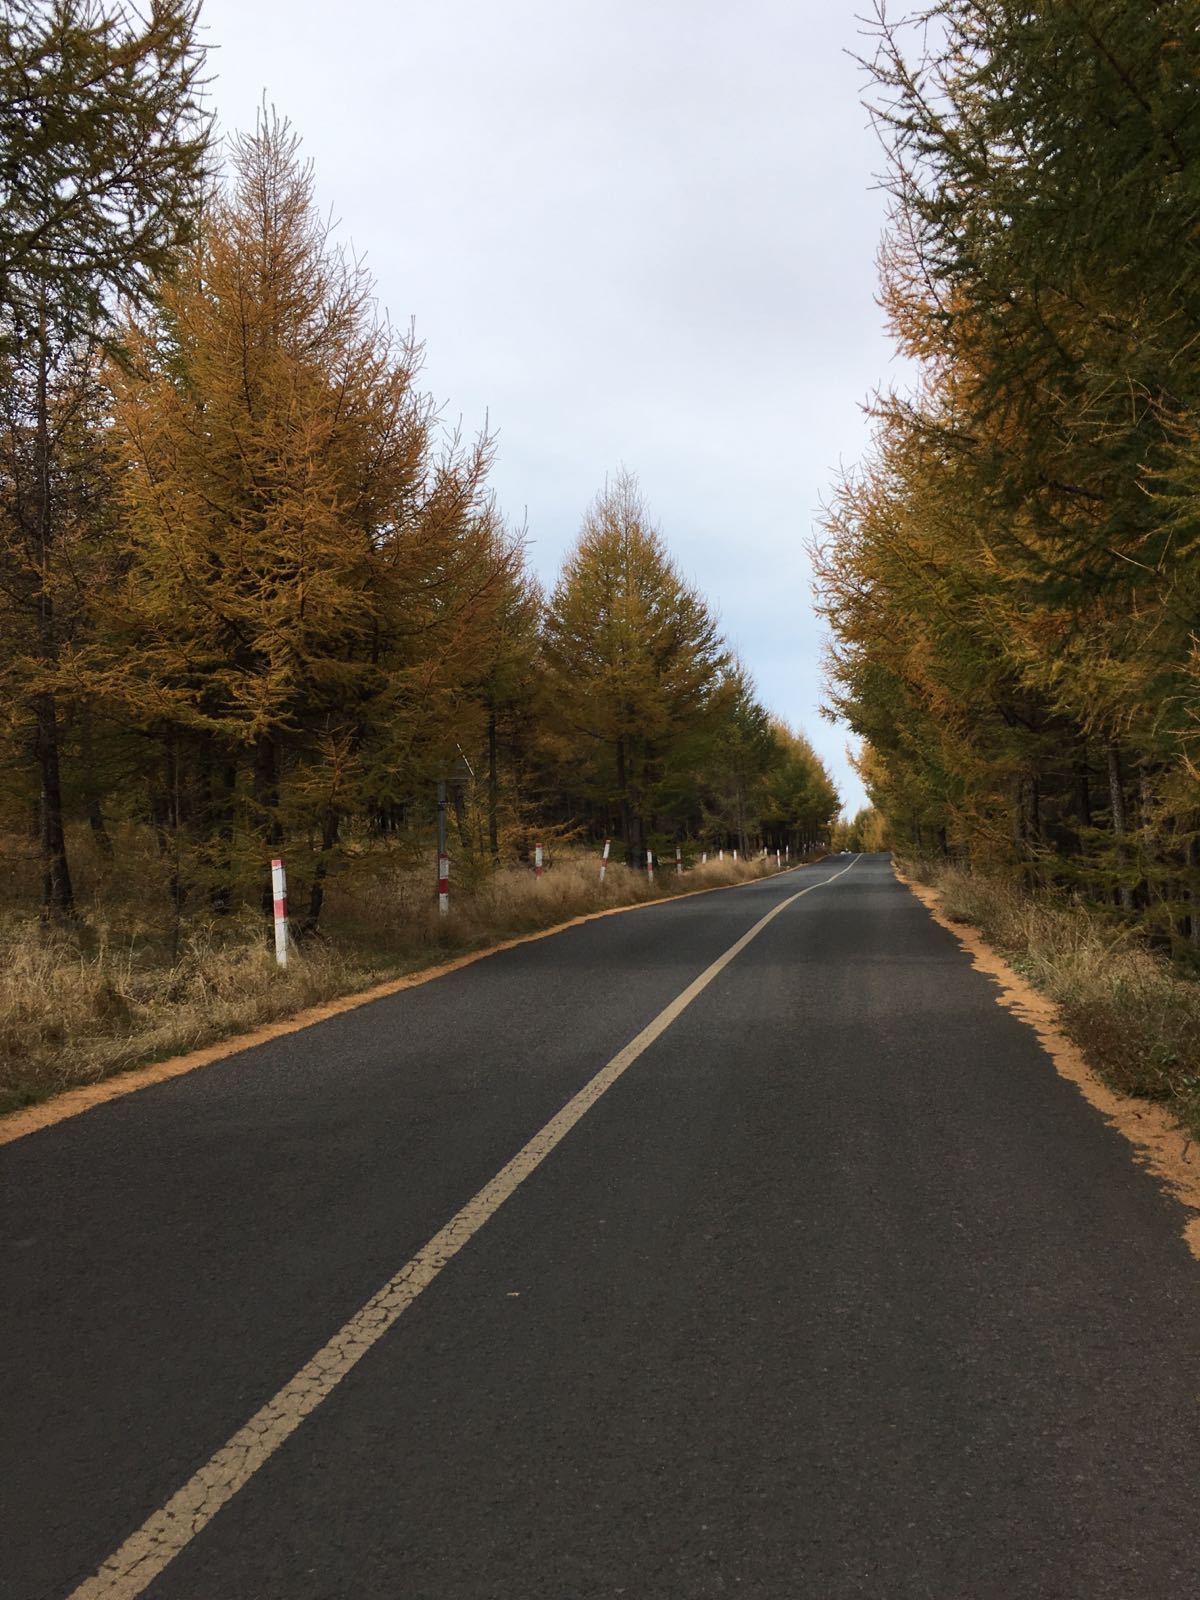 景色很美，秋天的颜色是黄棕相间，很有层次感！尤其喜欢路旁的树林，地上都